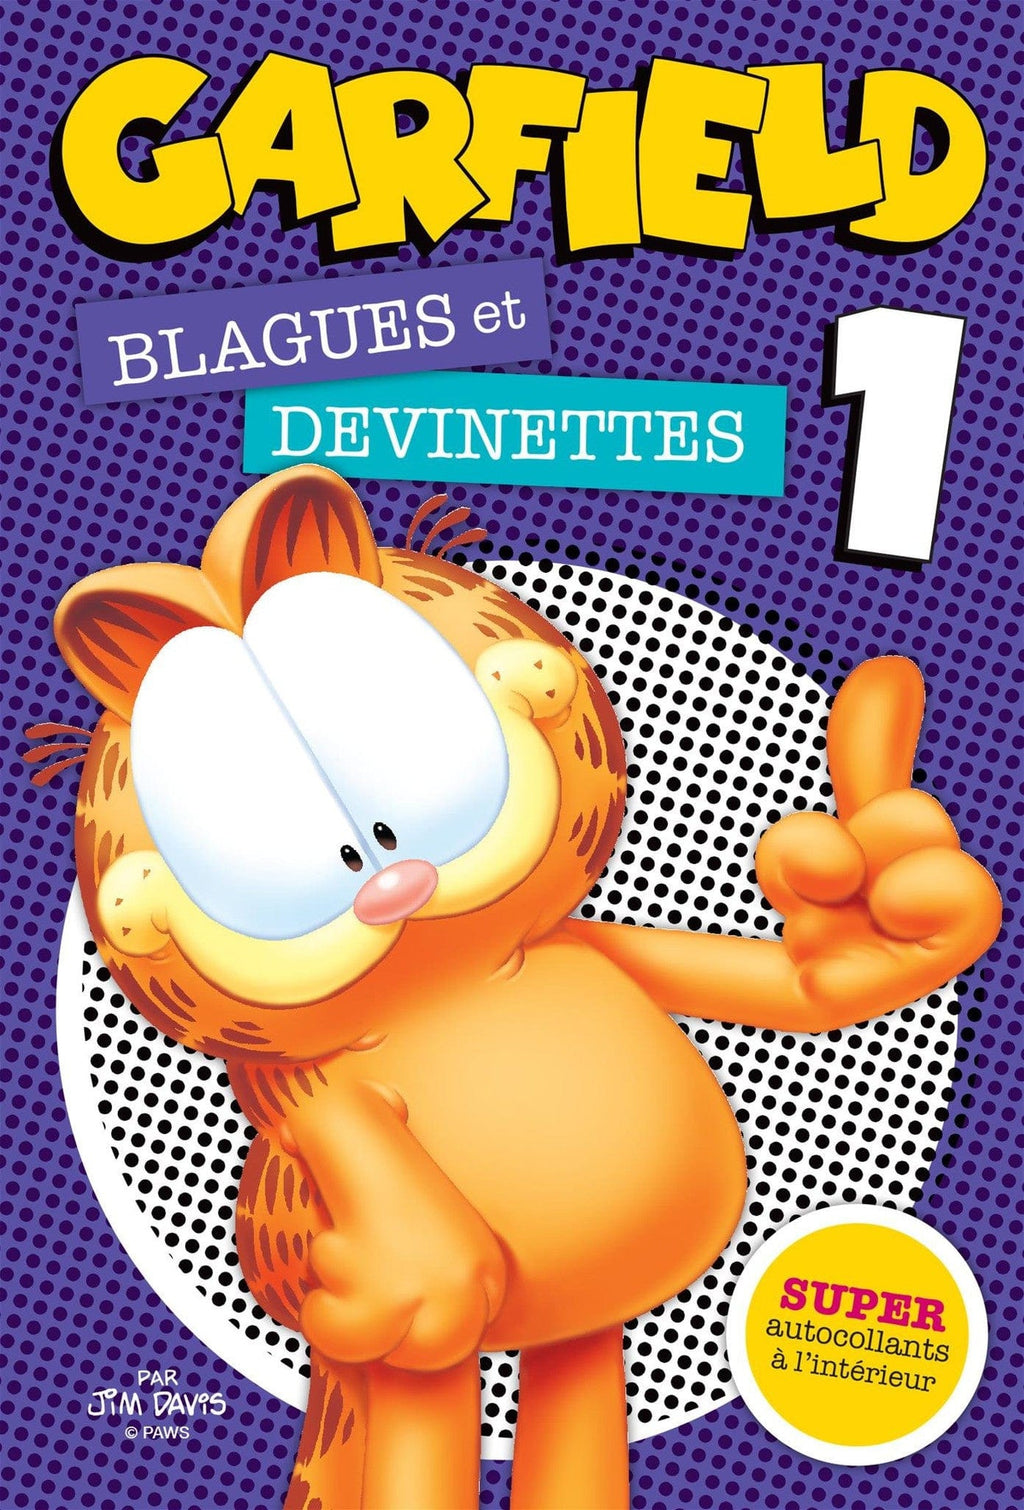 Garfield - Blagues et devinettes 1